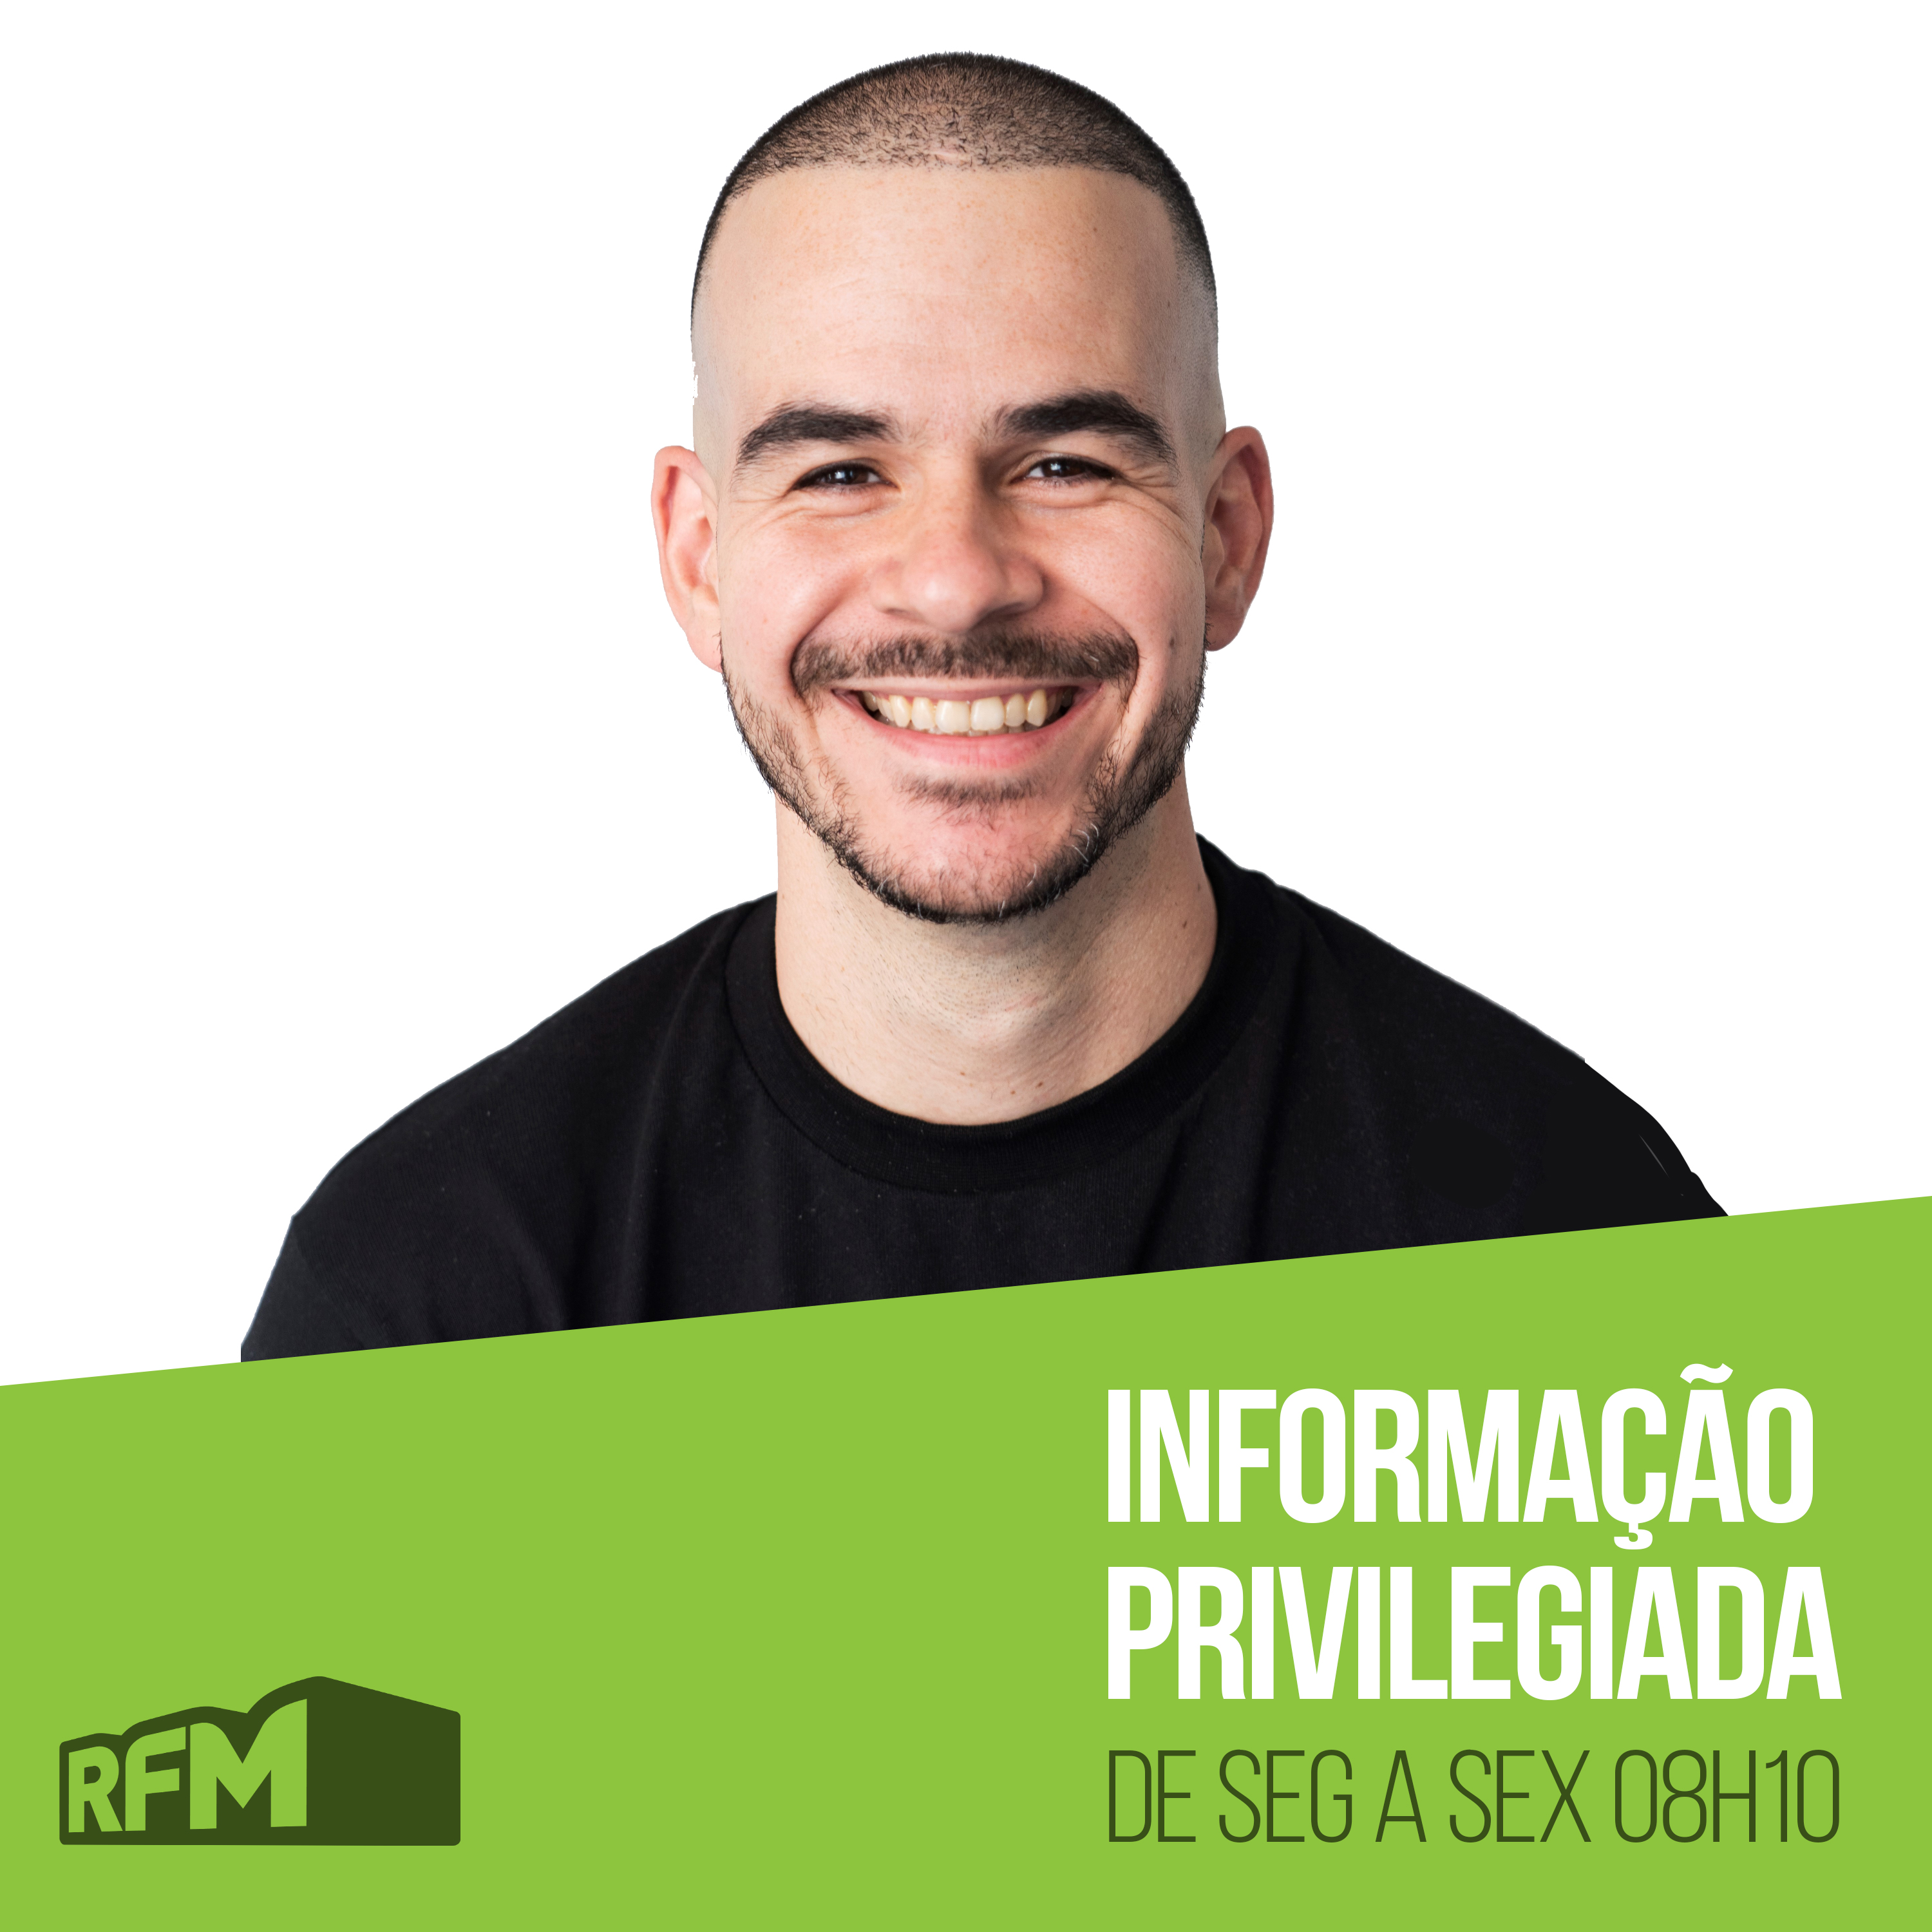 RFM - Informação Privilegiada: UNIVERSITÁRIO CONTRA AULAS POR ZOOM